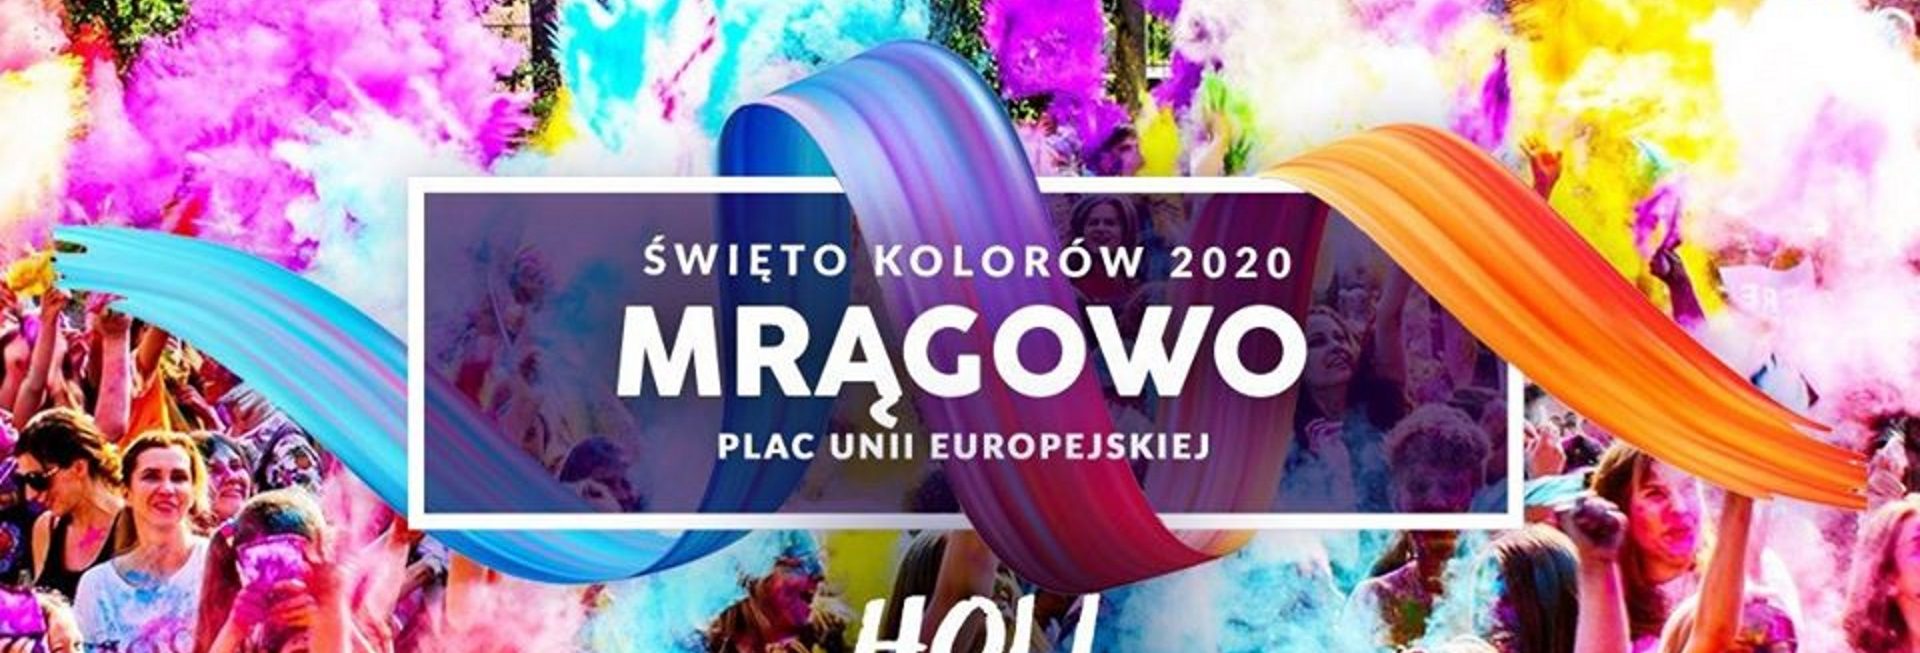 Plakat graficzny zapraszający do Mrągowa na imprezę Holi Święto Kolorów - Mrągowo 2020, Na plakacie zdjęcie bawiącej się publiczności a nad nimi chmura wielokolorowych proszków.  